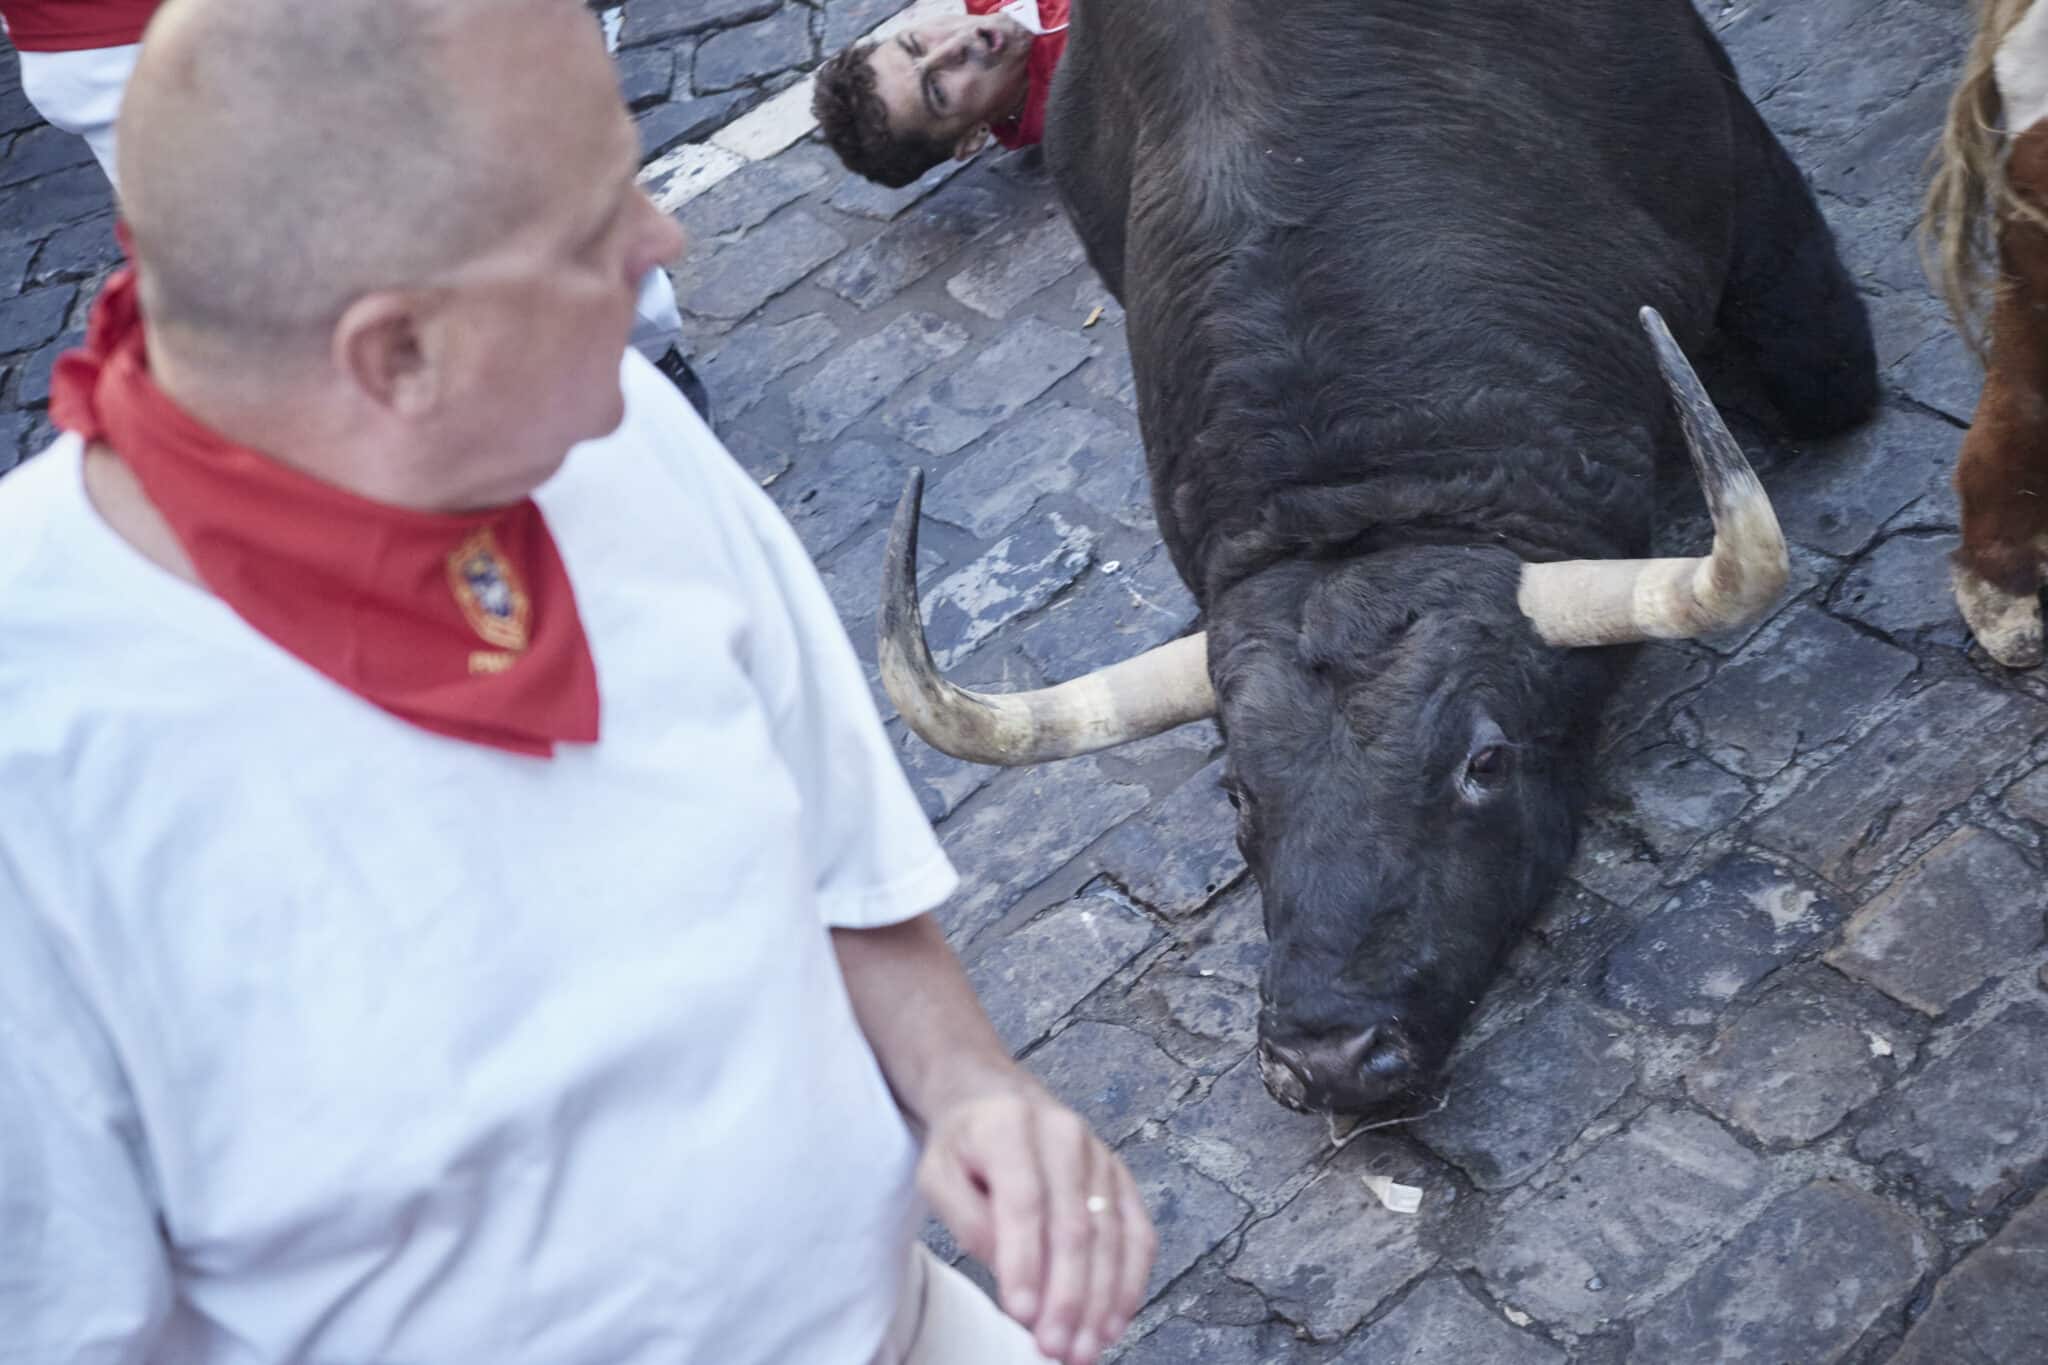 Un toro yace en el suelo durante el segundo encierro de las Fiestas de San Fermín 2022 de la ganadería de Fuente Ymbro, a 8 de julio de 2022, en Pamplona, Navarra (España).